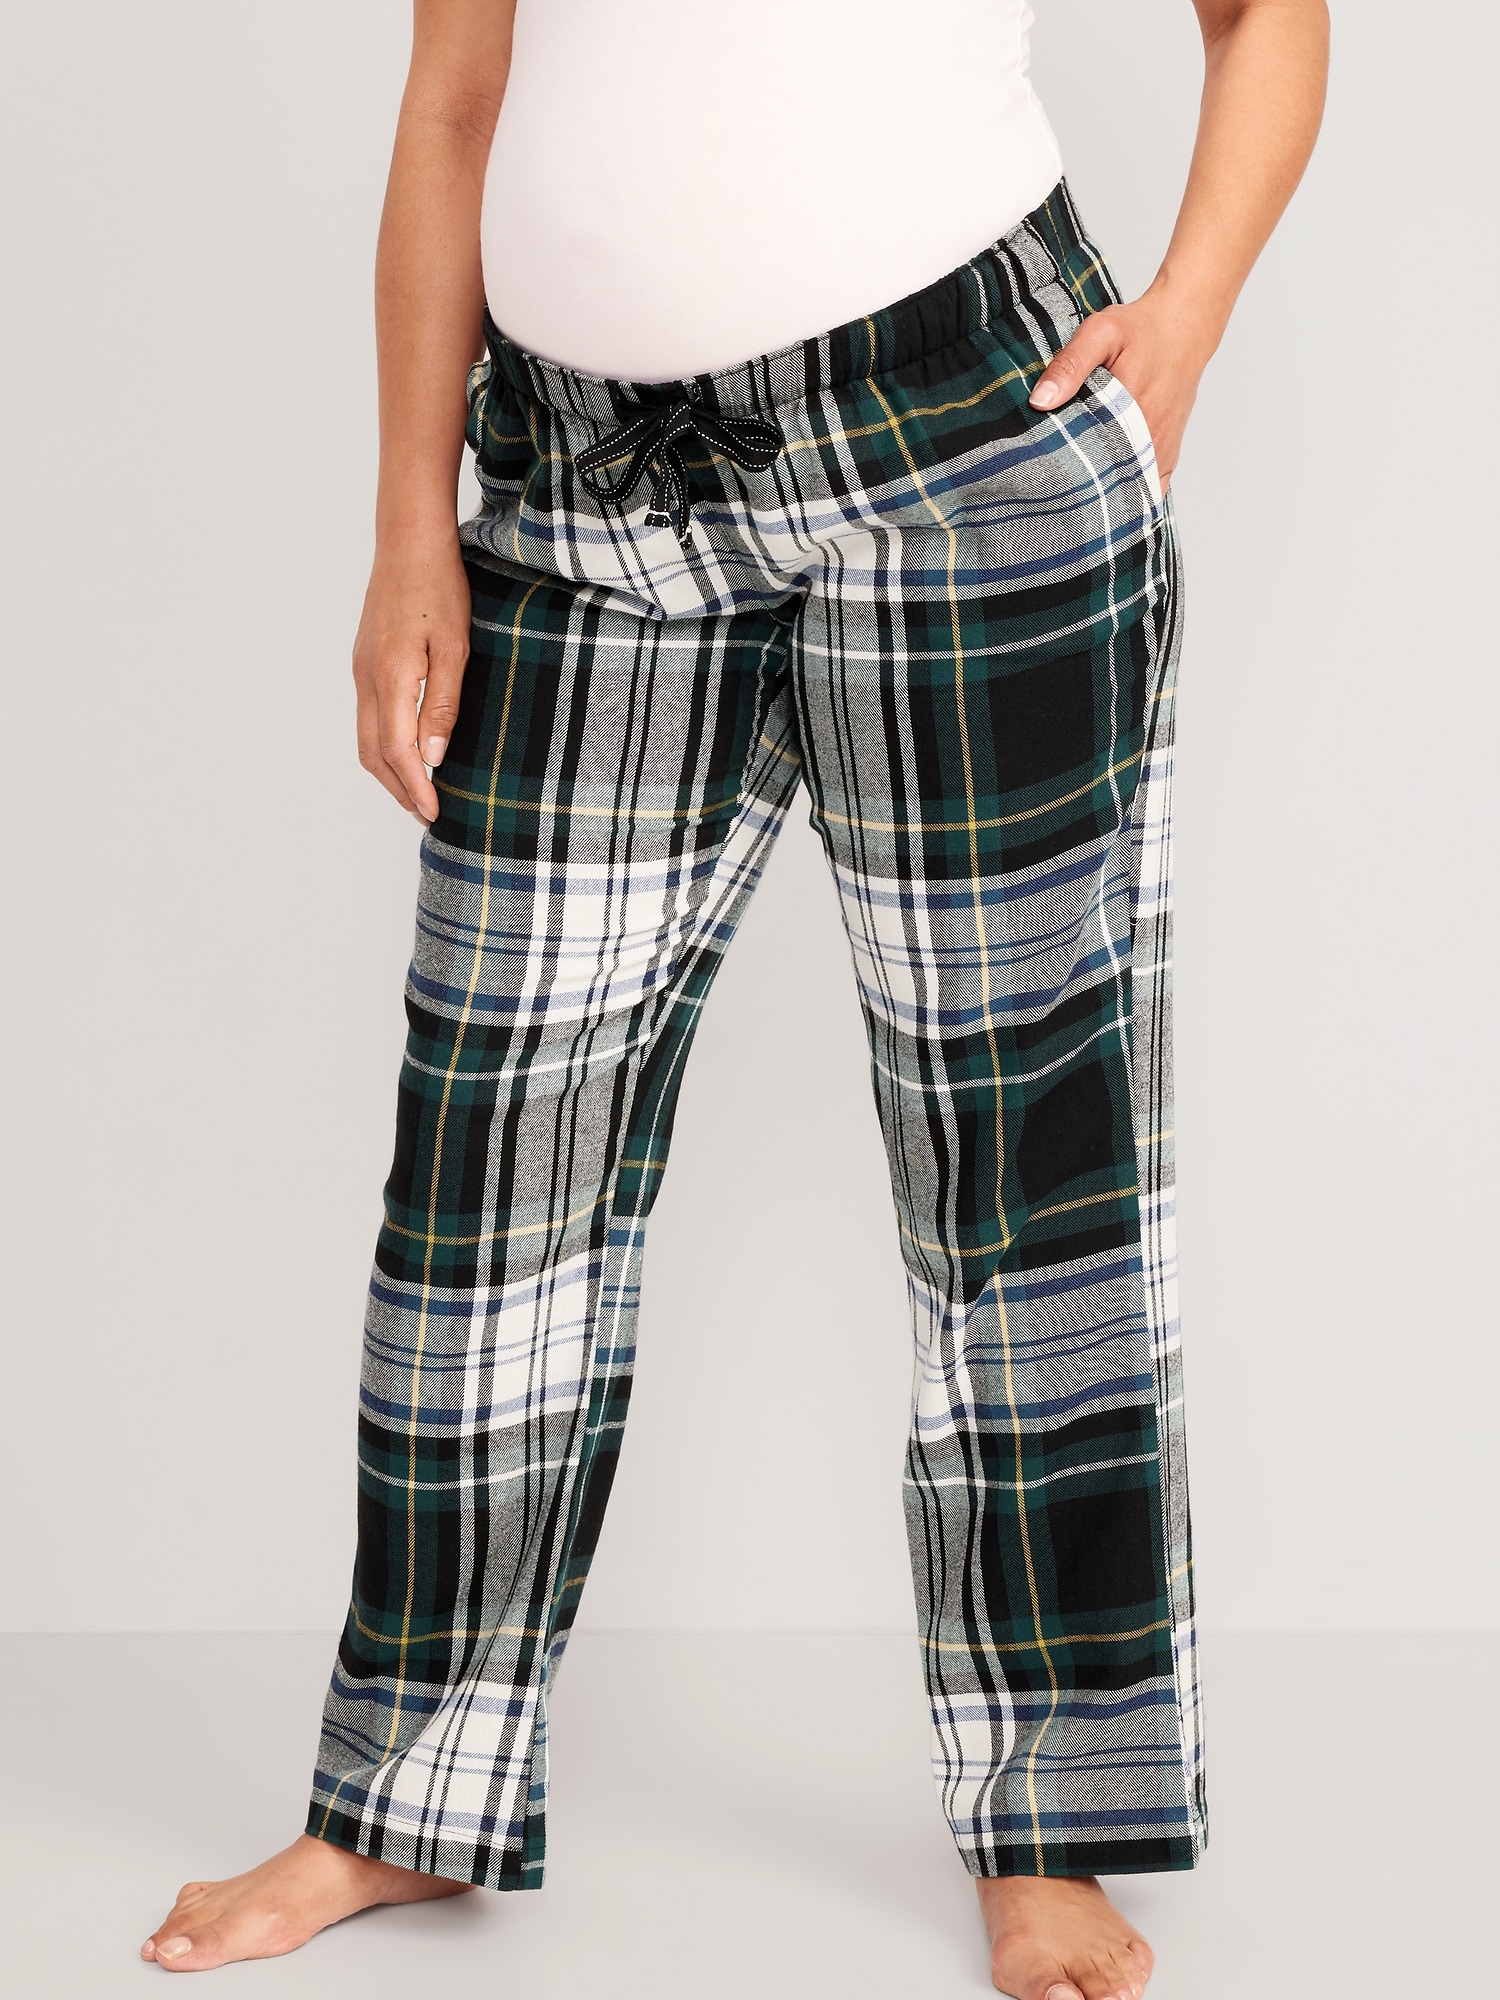 Womens Pajama Pants Sets Long Sleeve Design Top Pjs Sleepwear Loungewear   Fruugo IN